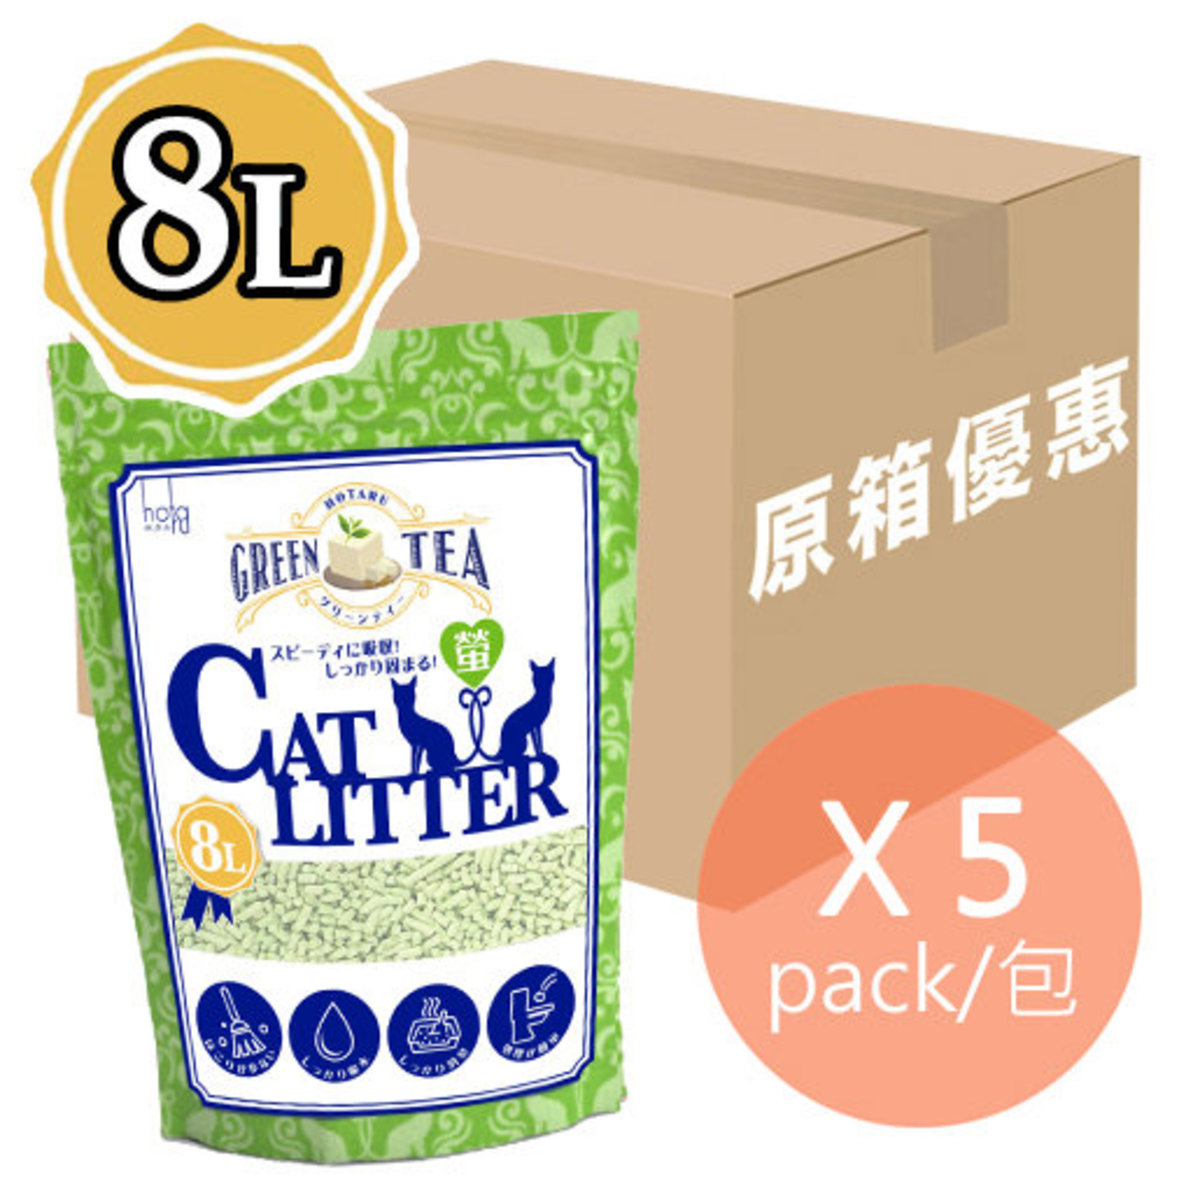 粟米豆腐貓砂 8L (綠茶味) X 5包